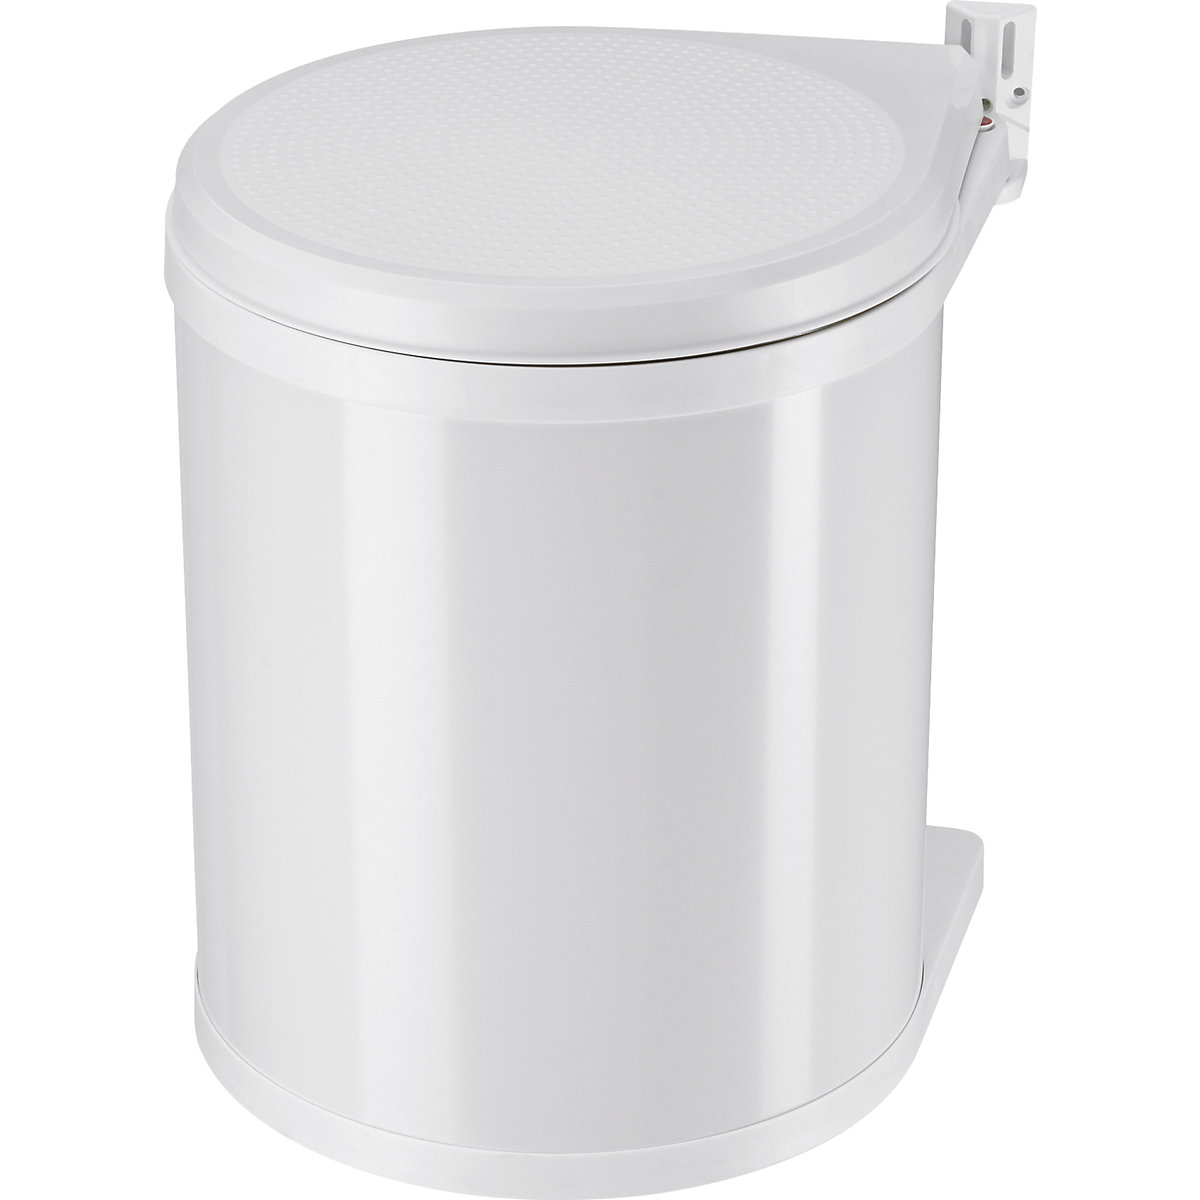 Coș de gunoi încorporat Compact-Box M – Hailo, cu sistem de ridicare a capacului, 1 x 15 l, alb